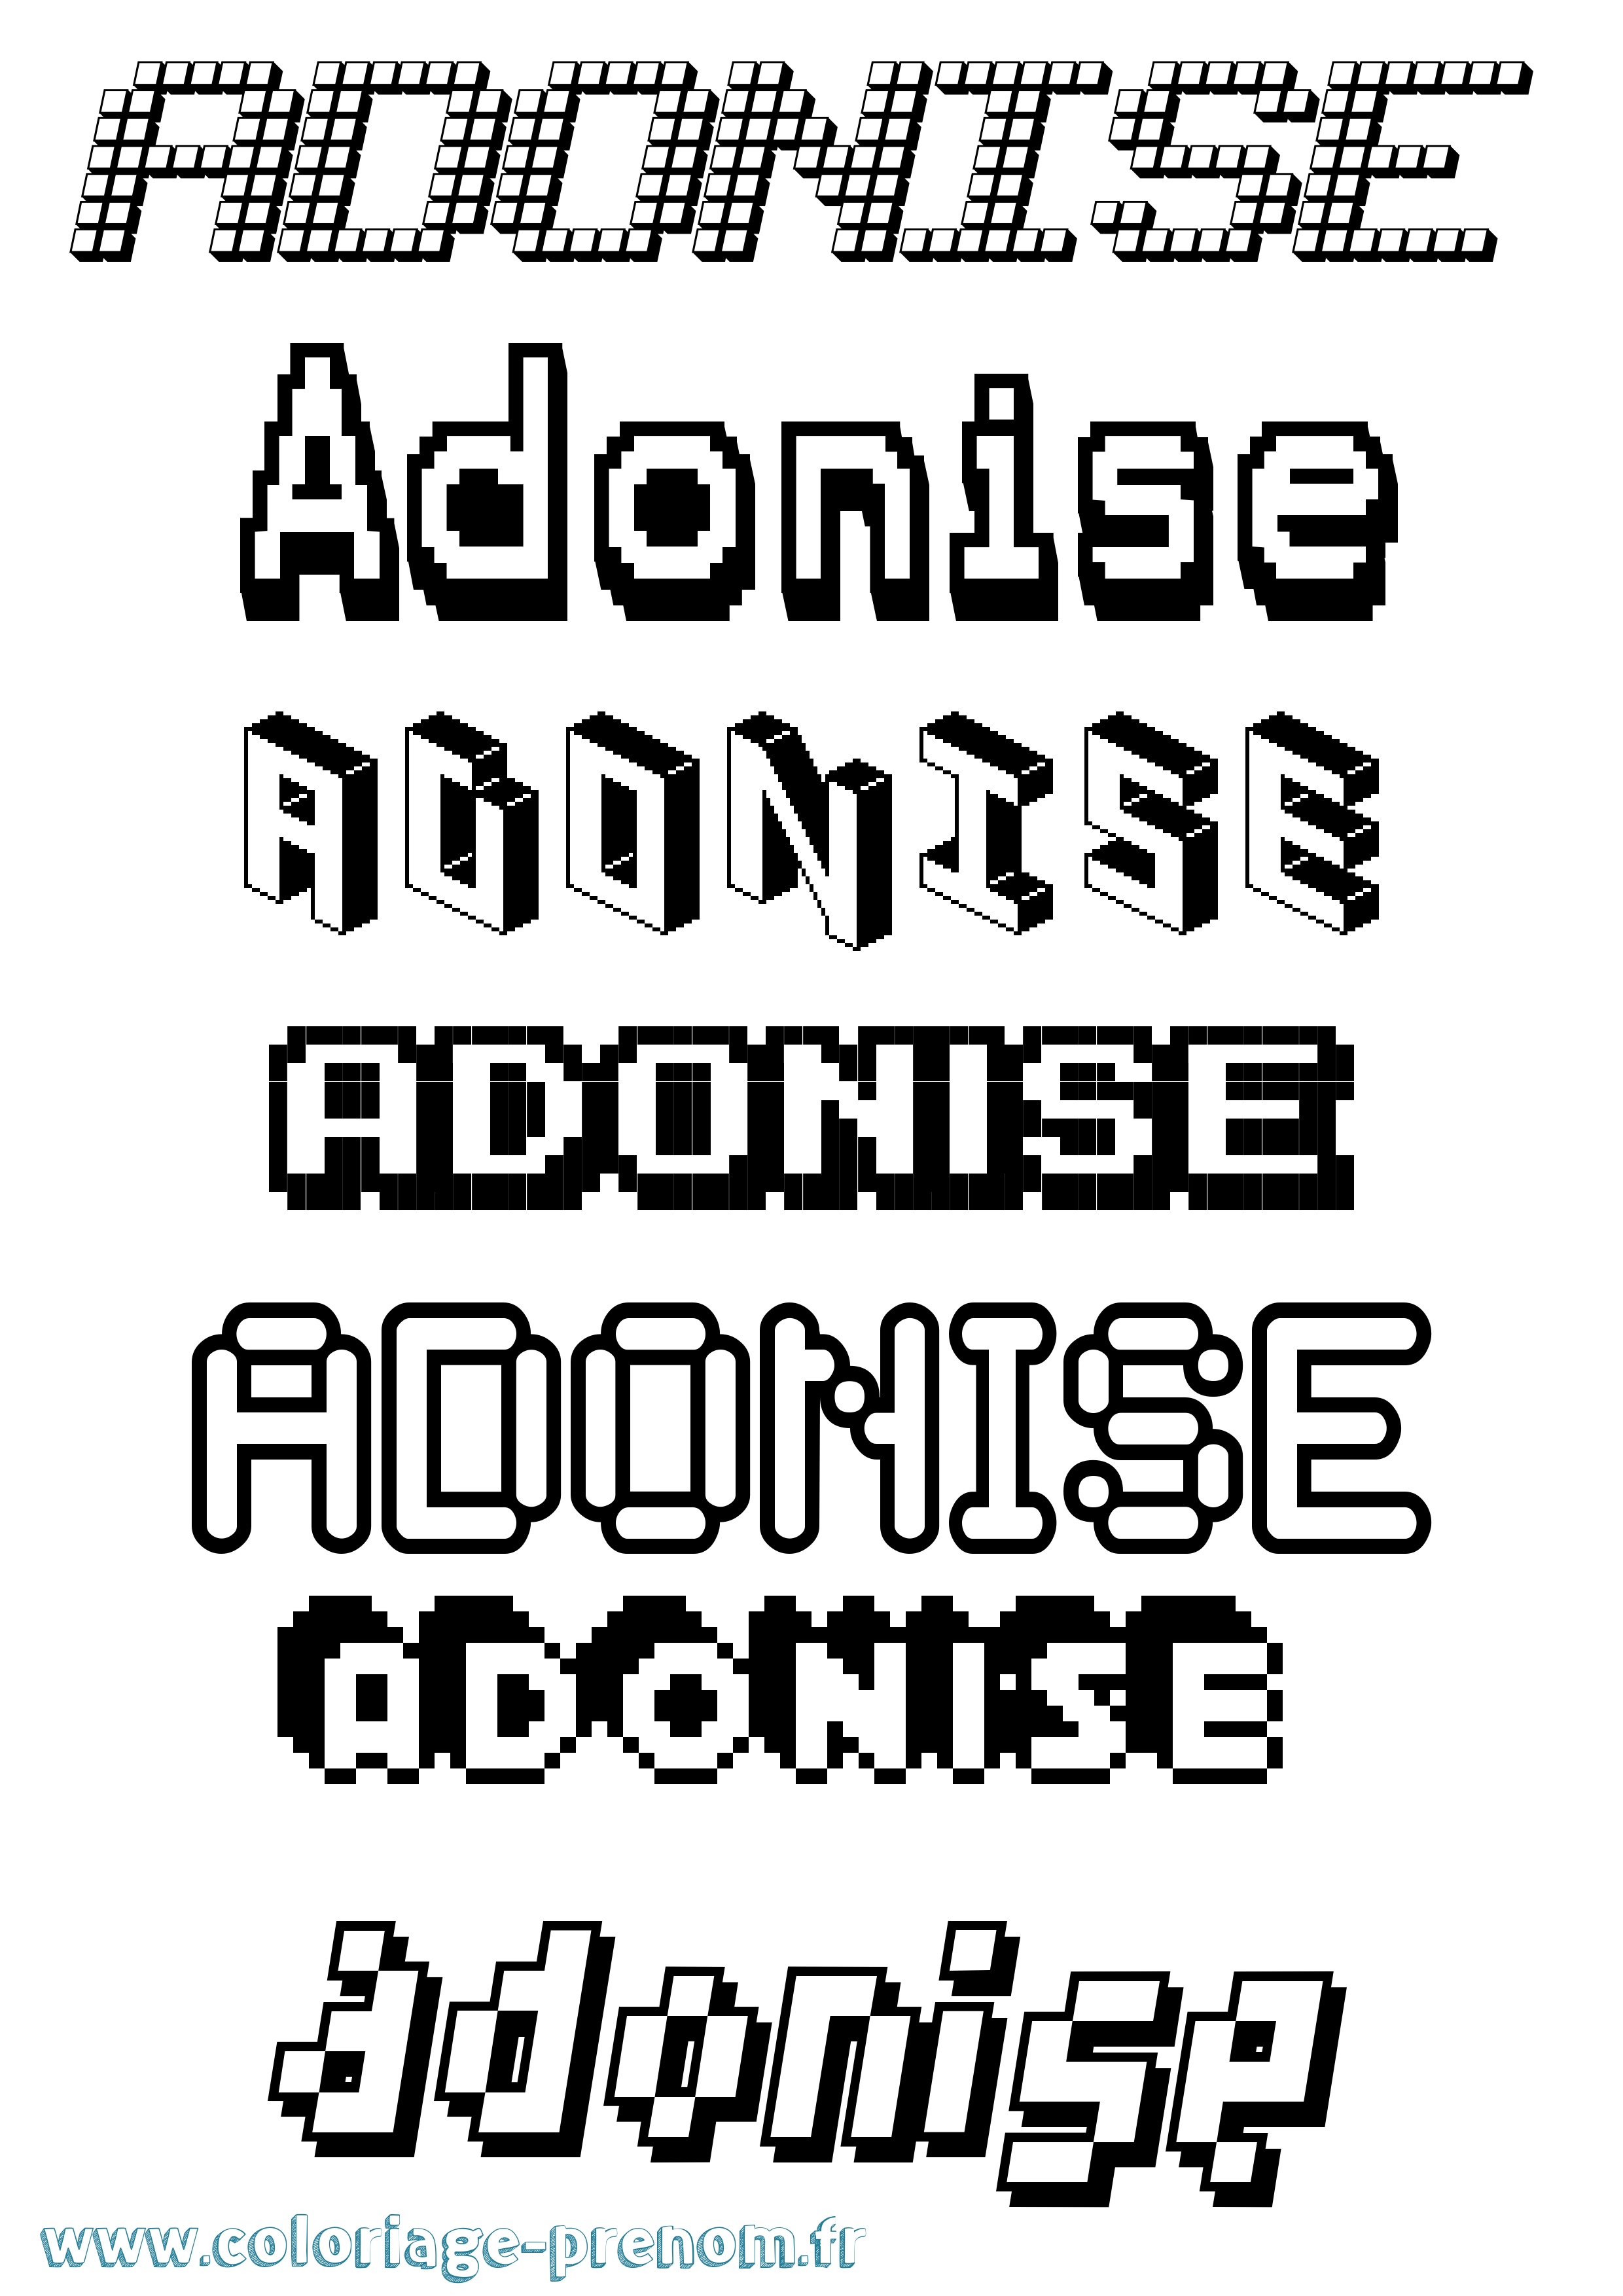 Coloriage prénom Adonise Pixel